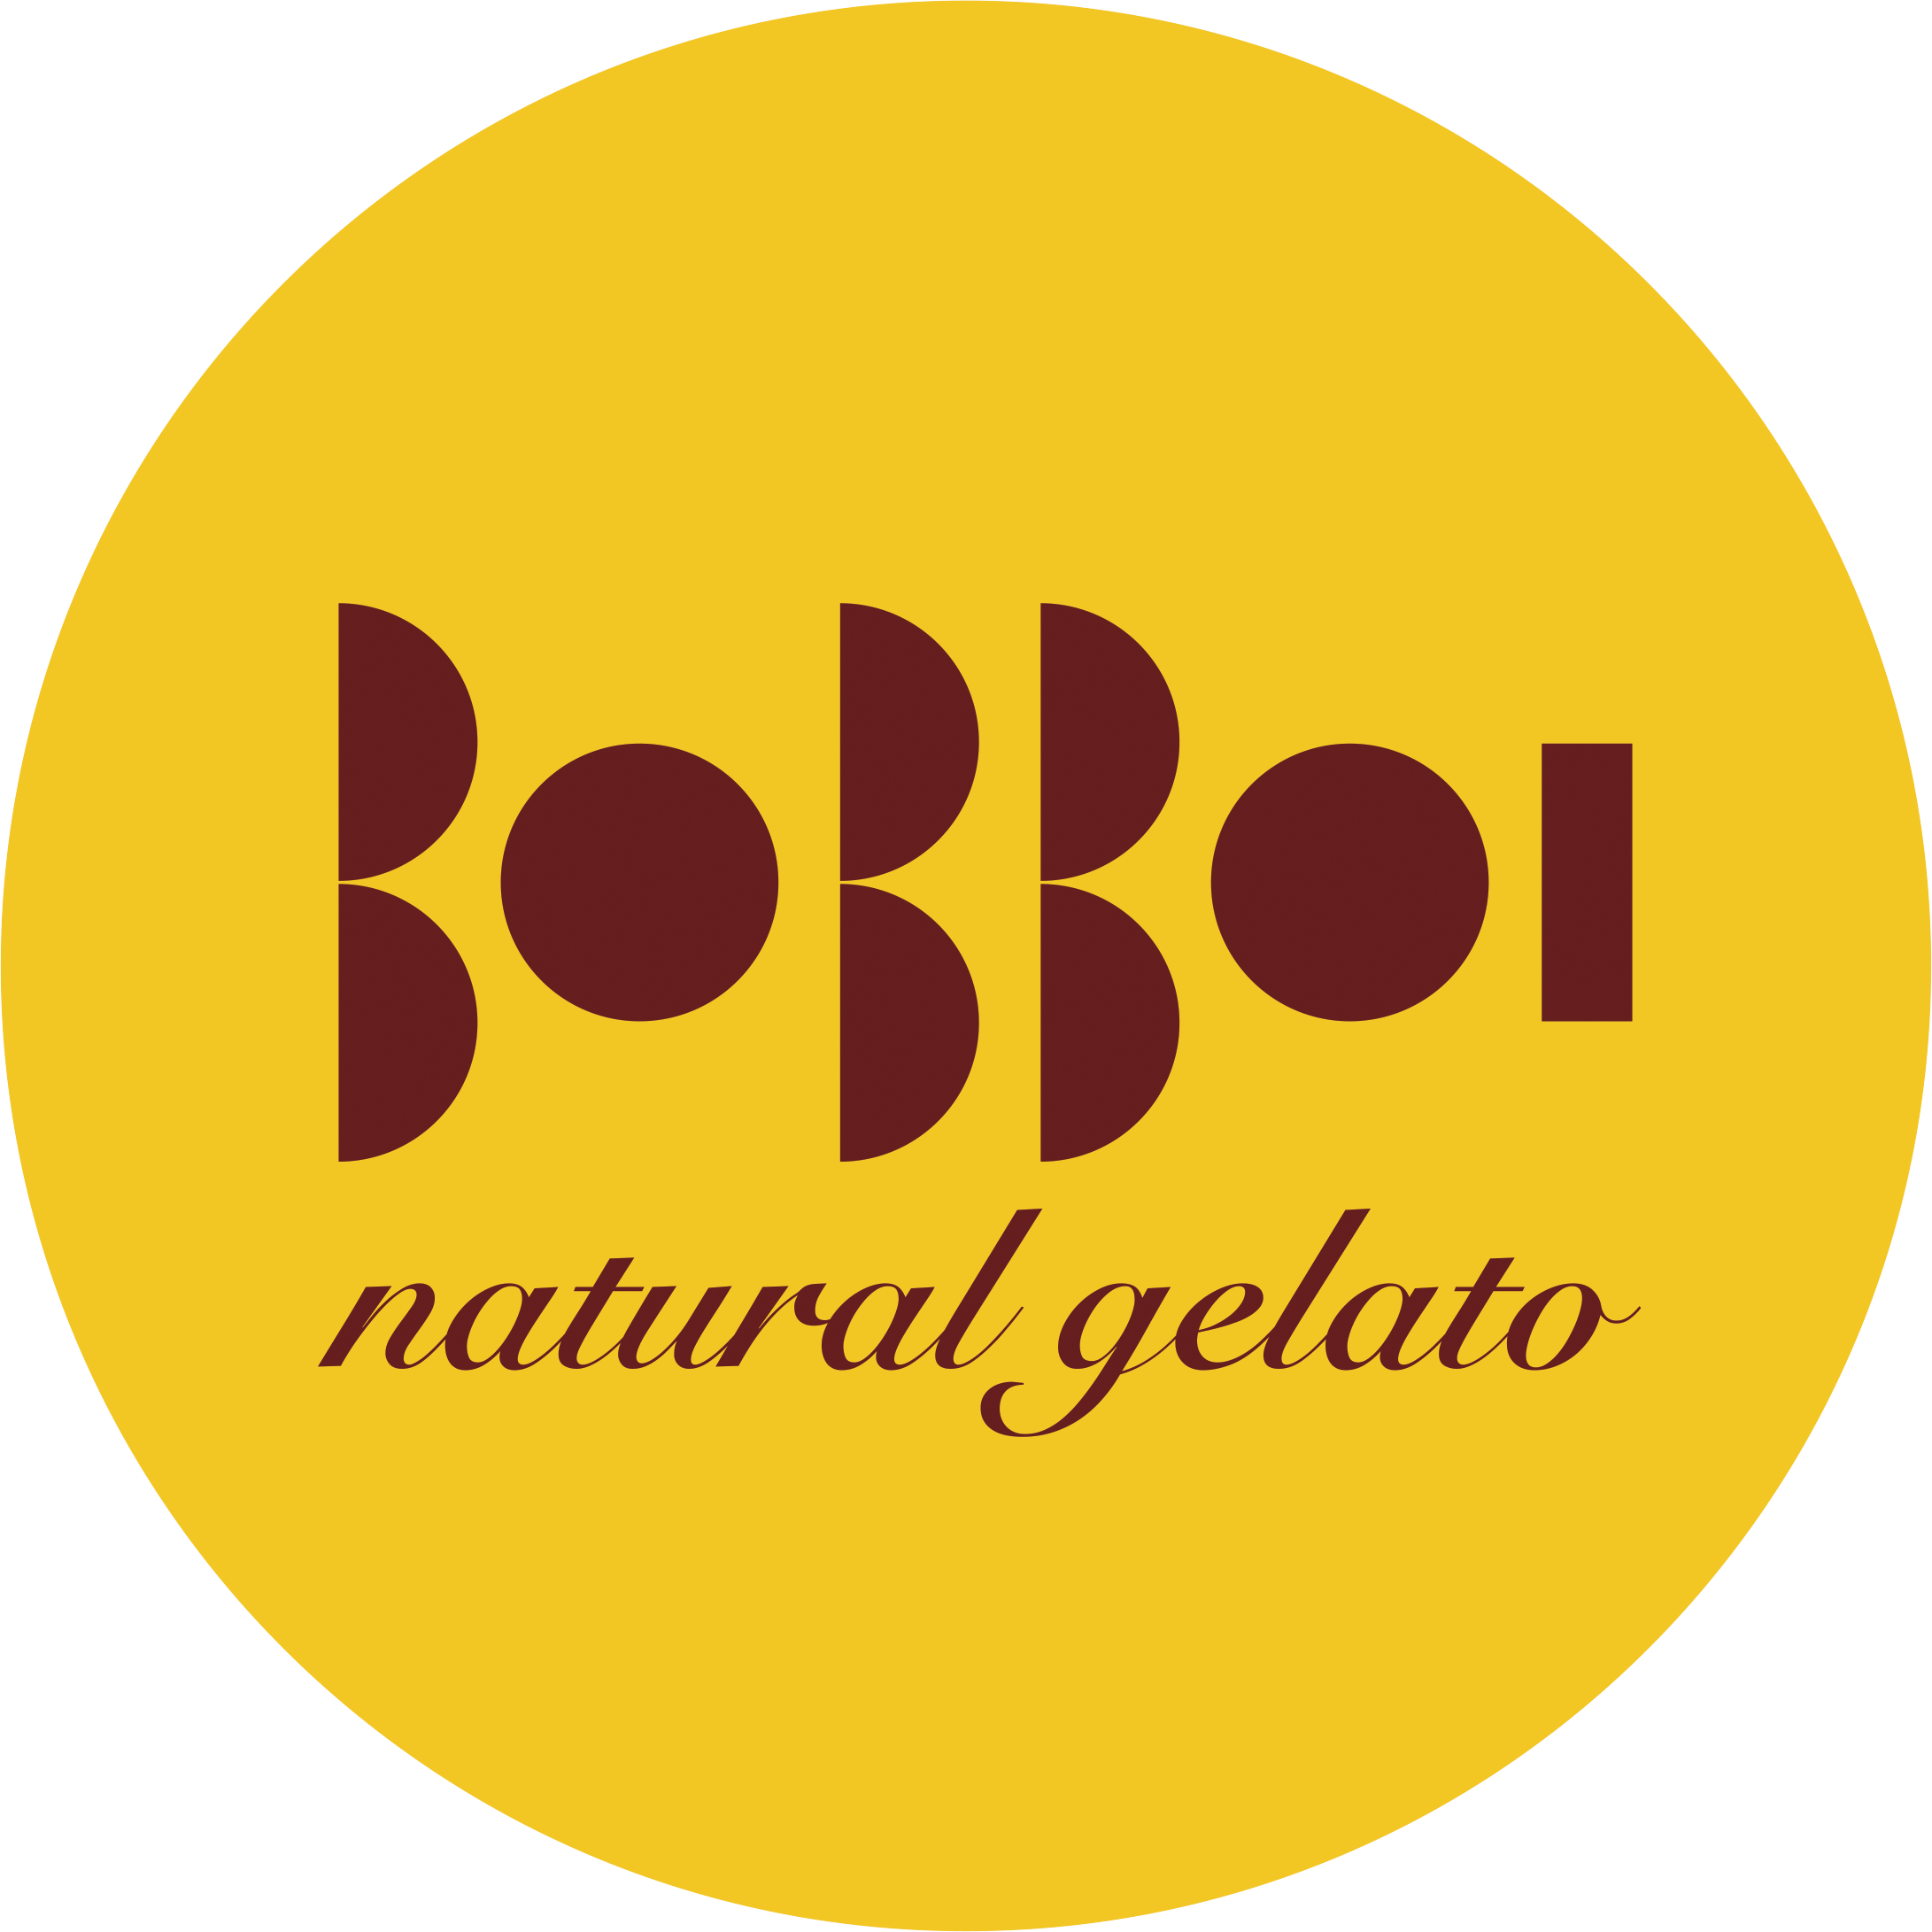 BOBBOI NATURAL GELATO - KETTNER BLD SAN DIEGO